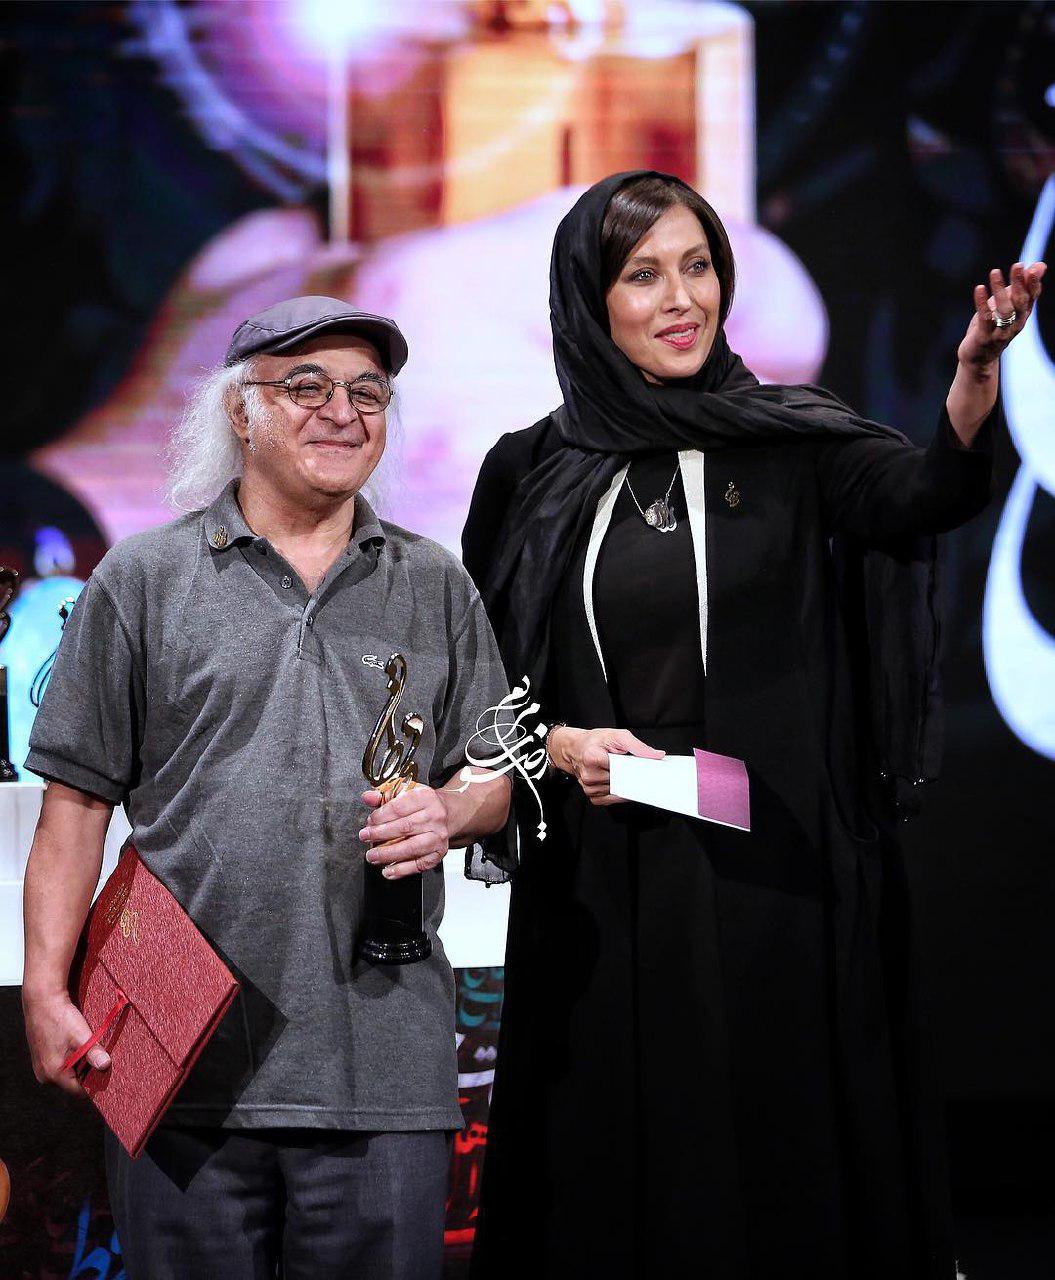 فریدون جیرانی، نویسنده و کارگردان سینما و تلویزیون - عکس جشنواره به همراه مهتاب کرامتی